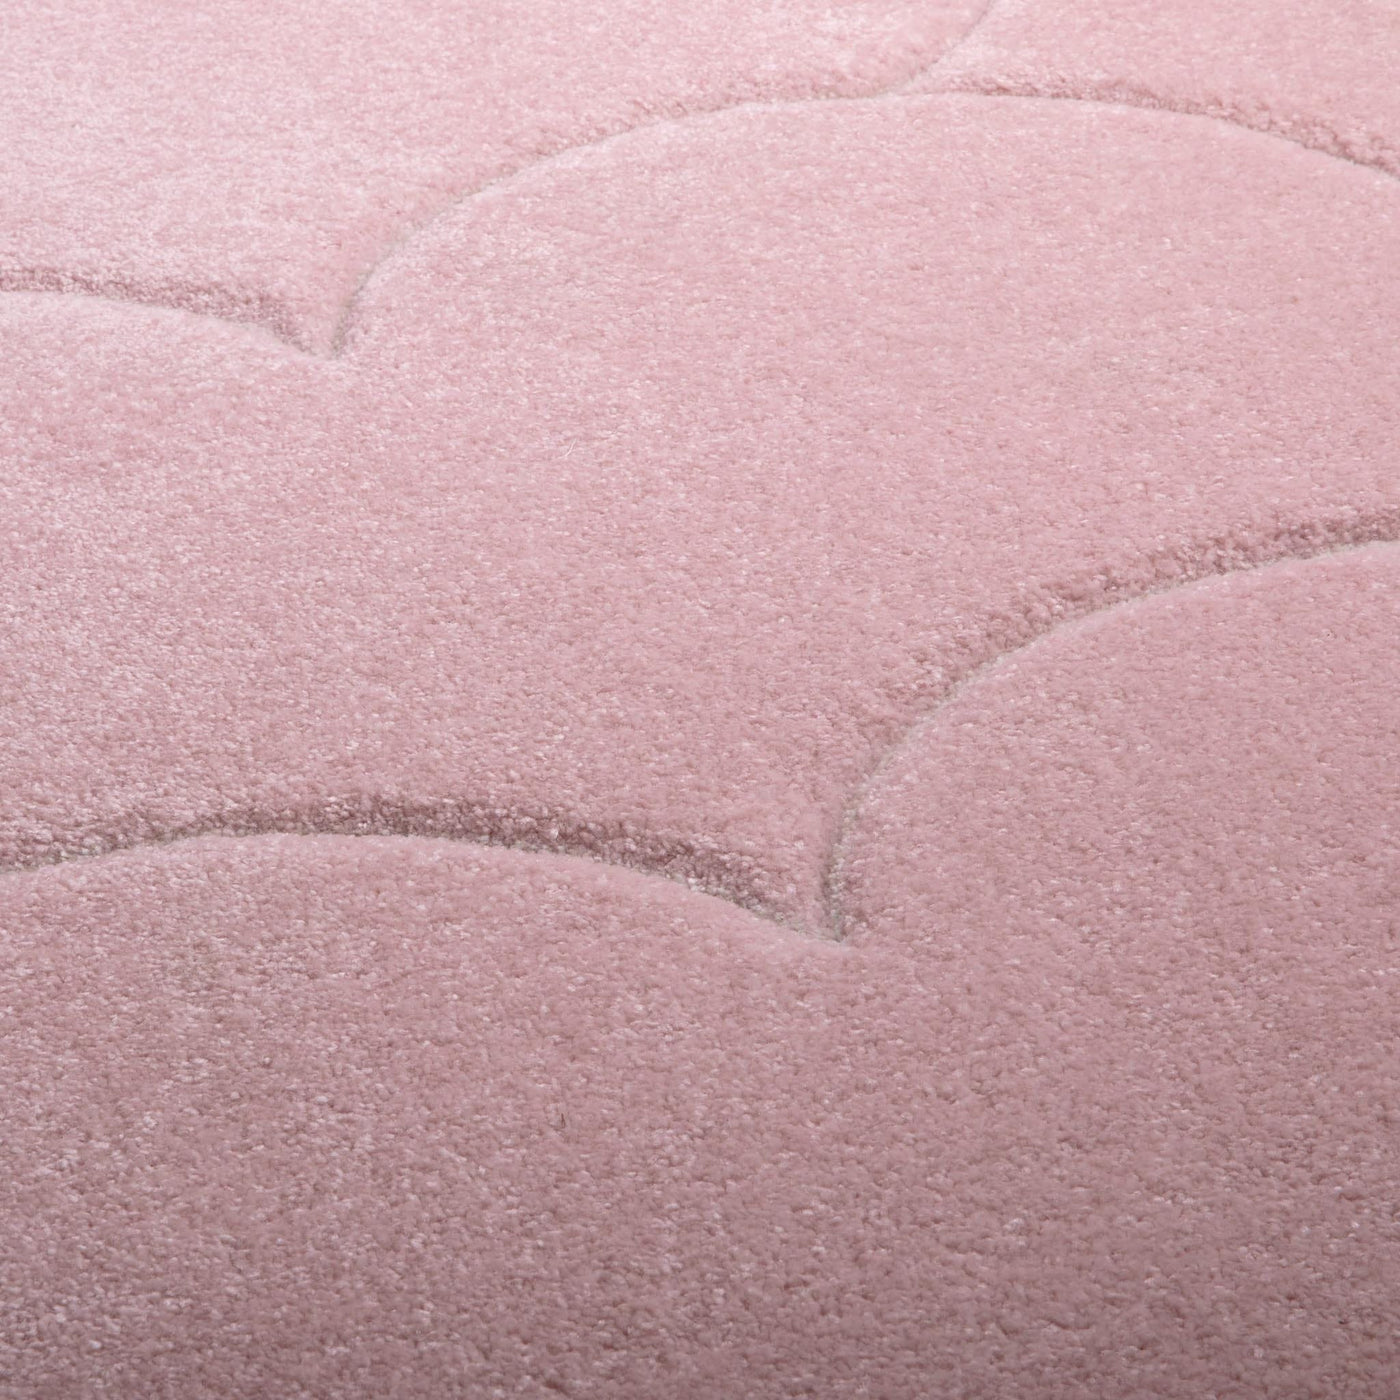 Le tapis Bubble de Fatboy, une œuvre d'art pour votre sol. Son motif arrondi crée un équilibre entre design et confort, transformant instantanément l'ambiance de votre espace.